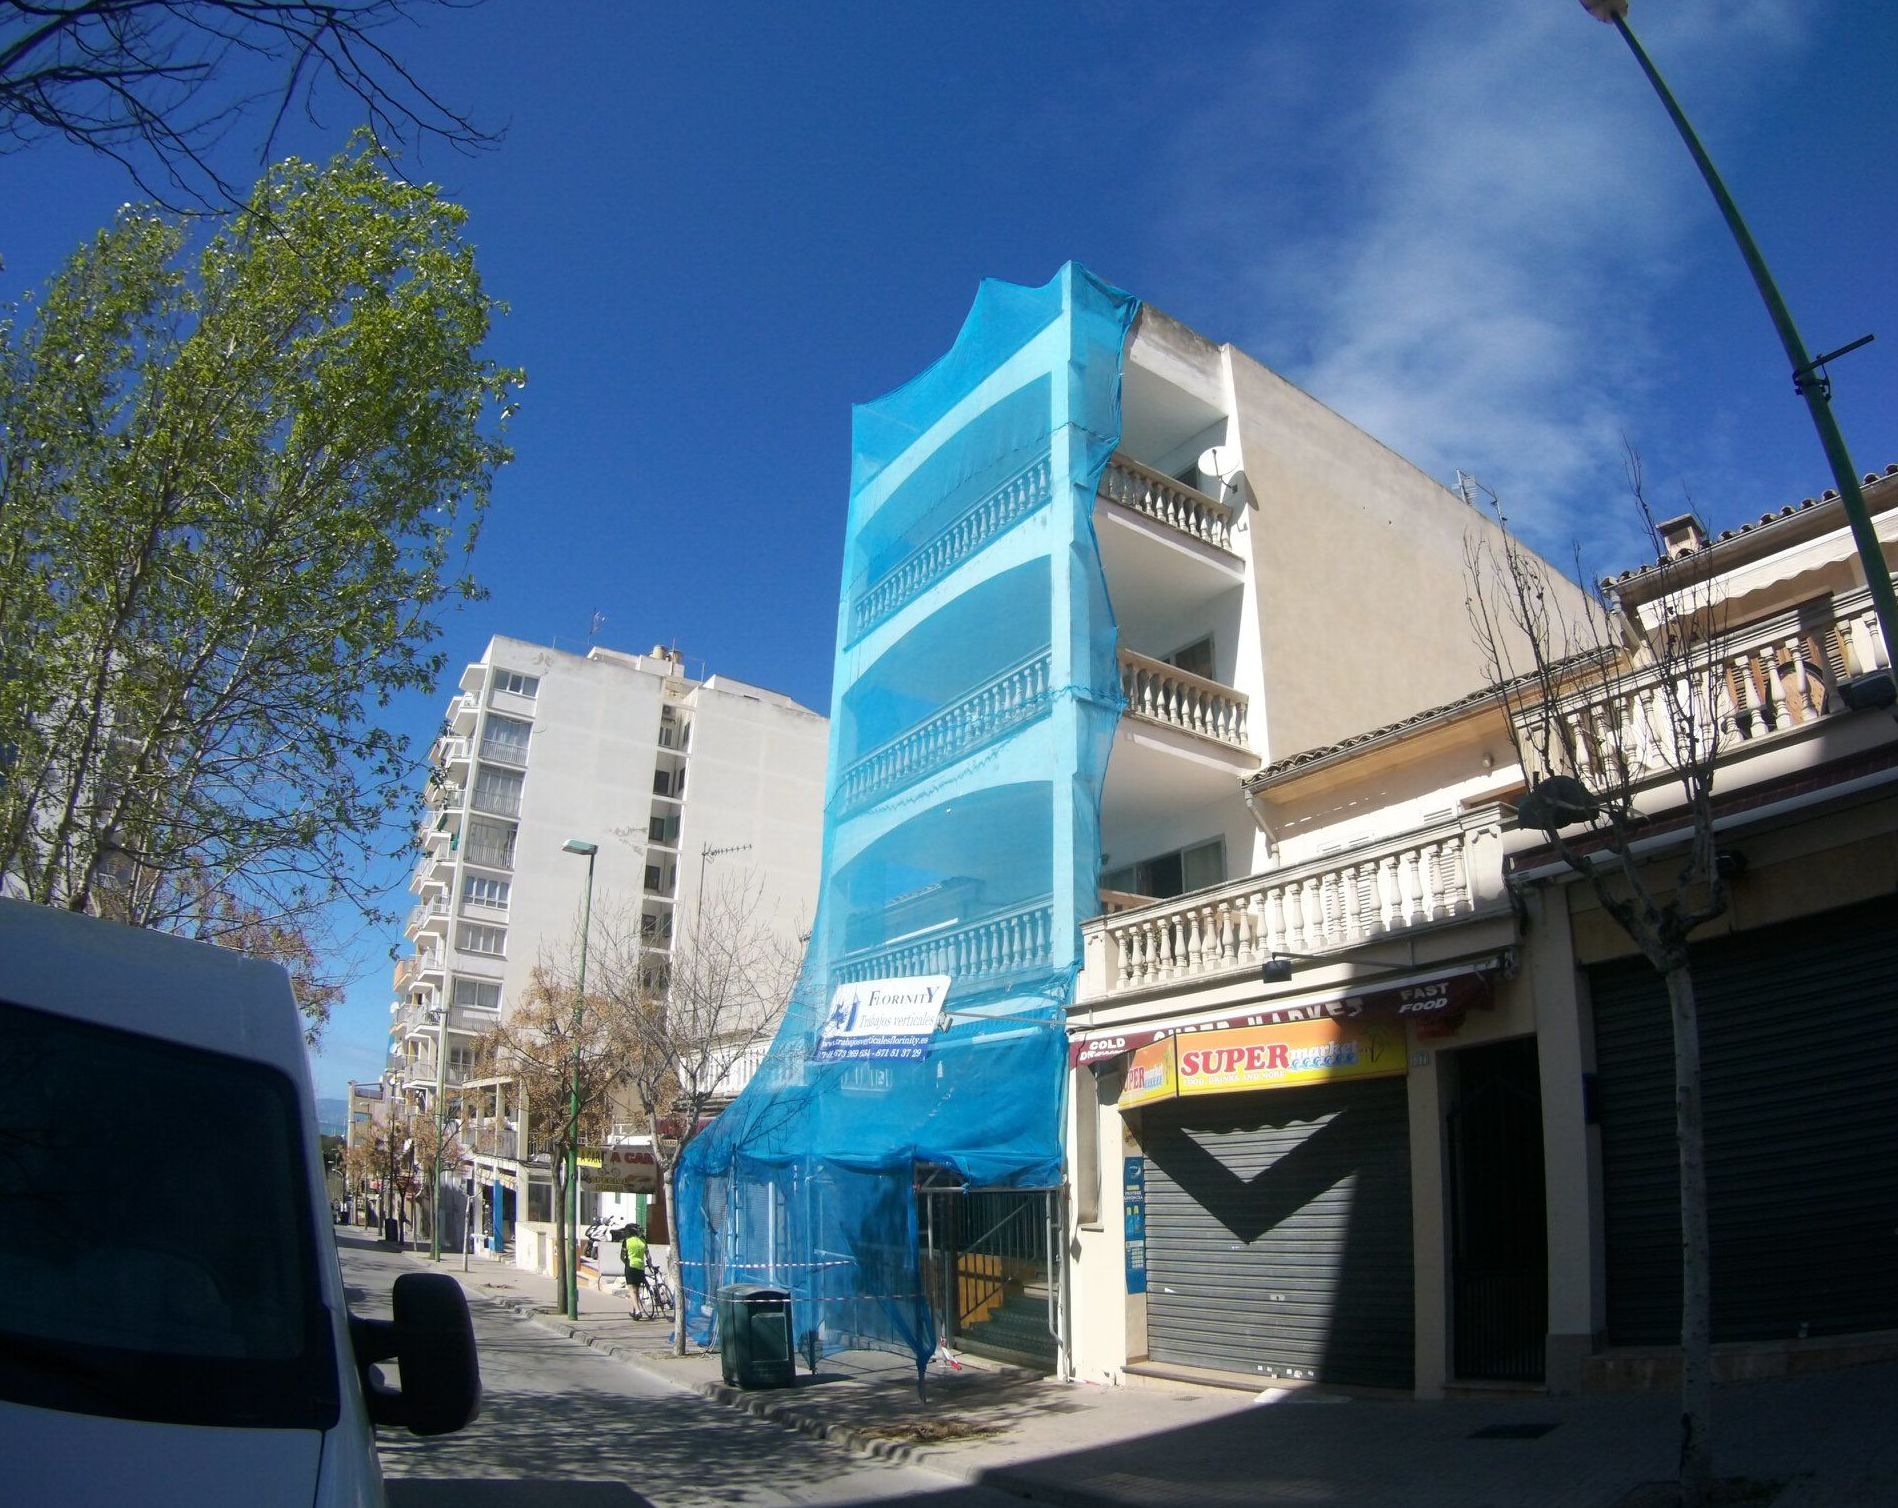 Foto 95 de Trabajos verticales en Palma de Mallorca | Trabajos Verticales Florinity